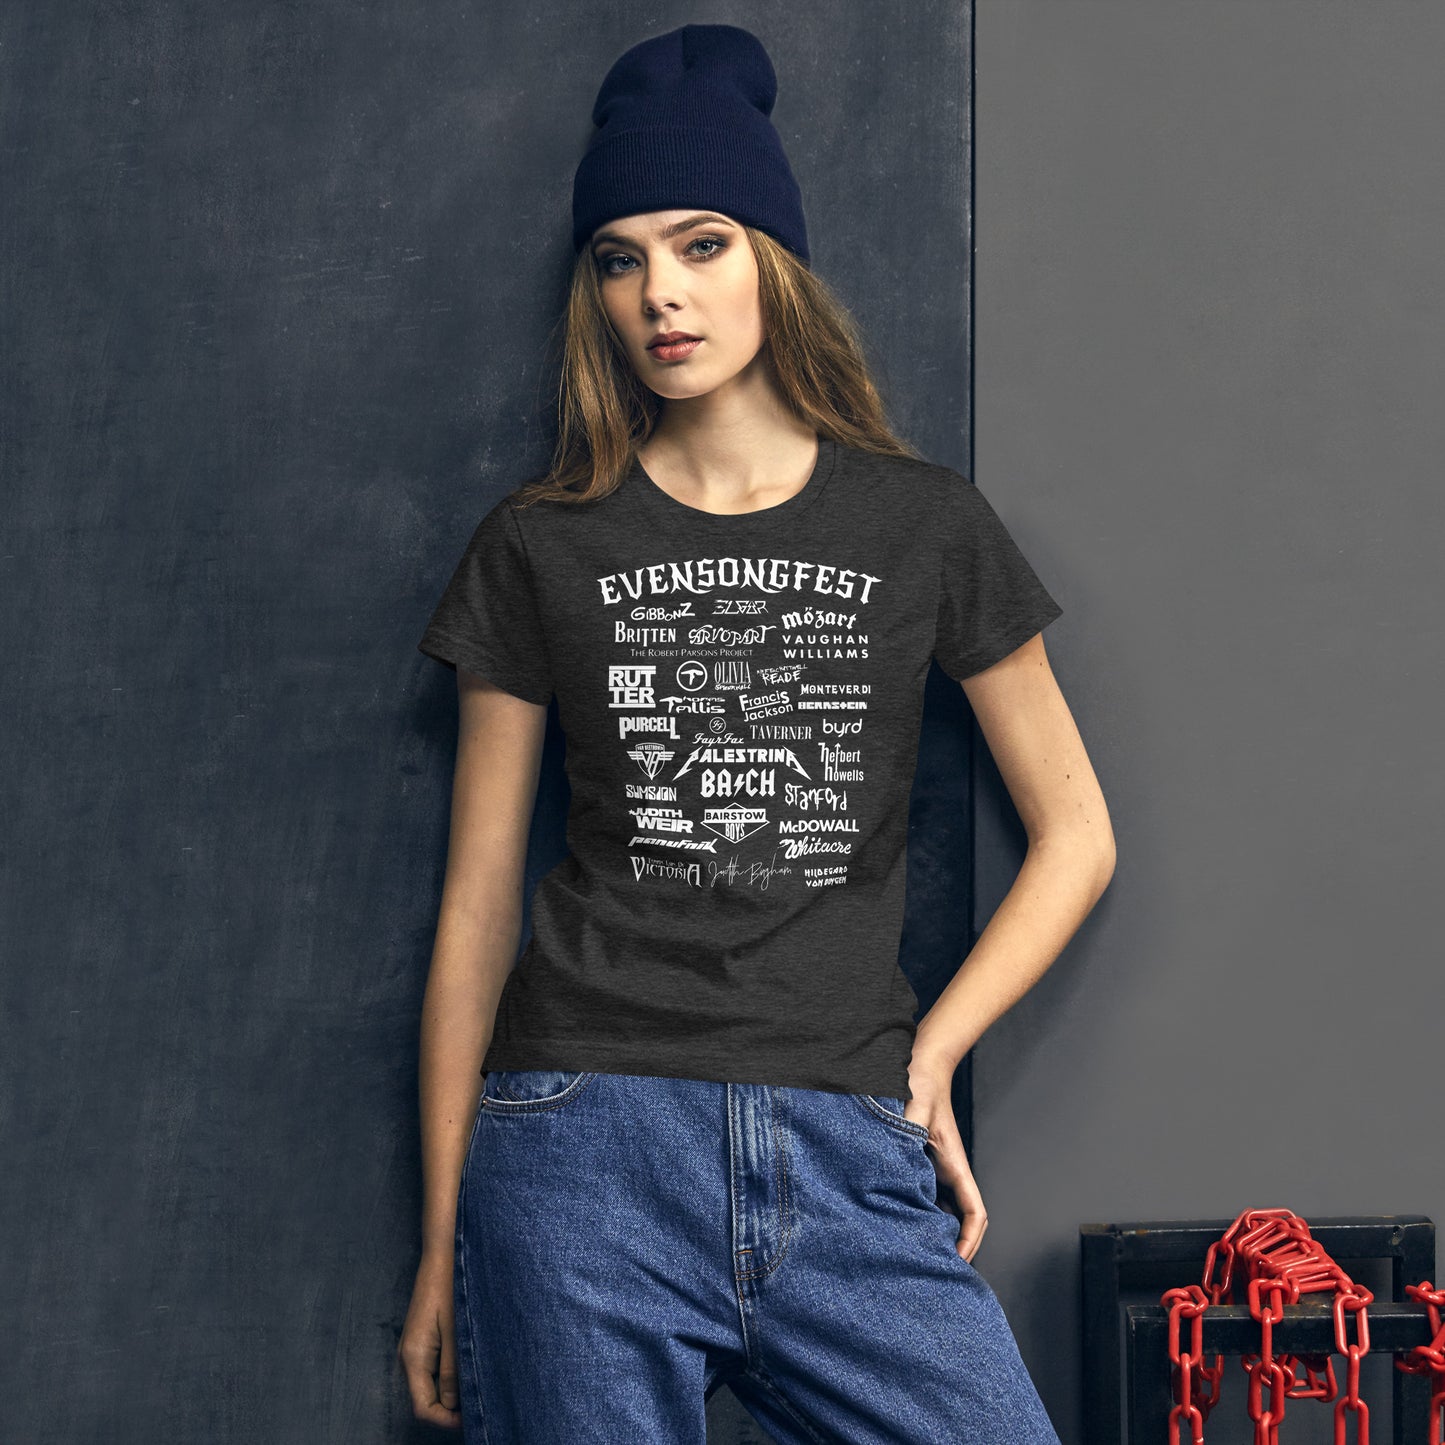 EVENSONGFEST (new!) Women's T-shirt